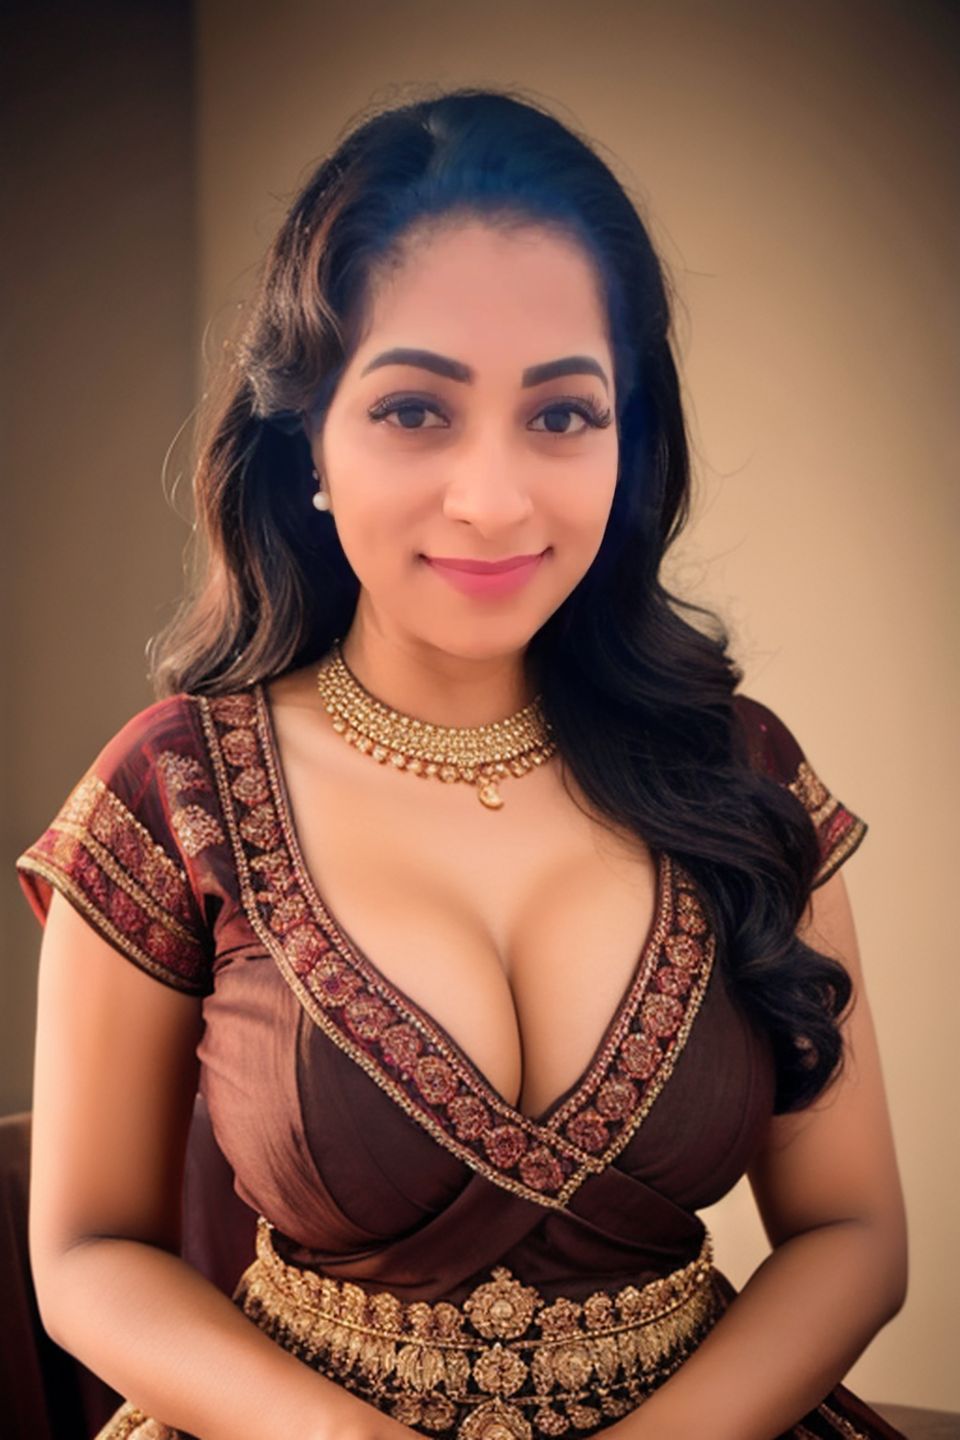 Deepthi Kapil low neck blouse cleavage